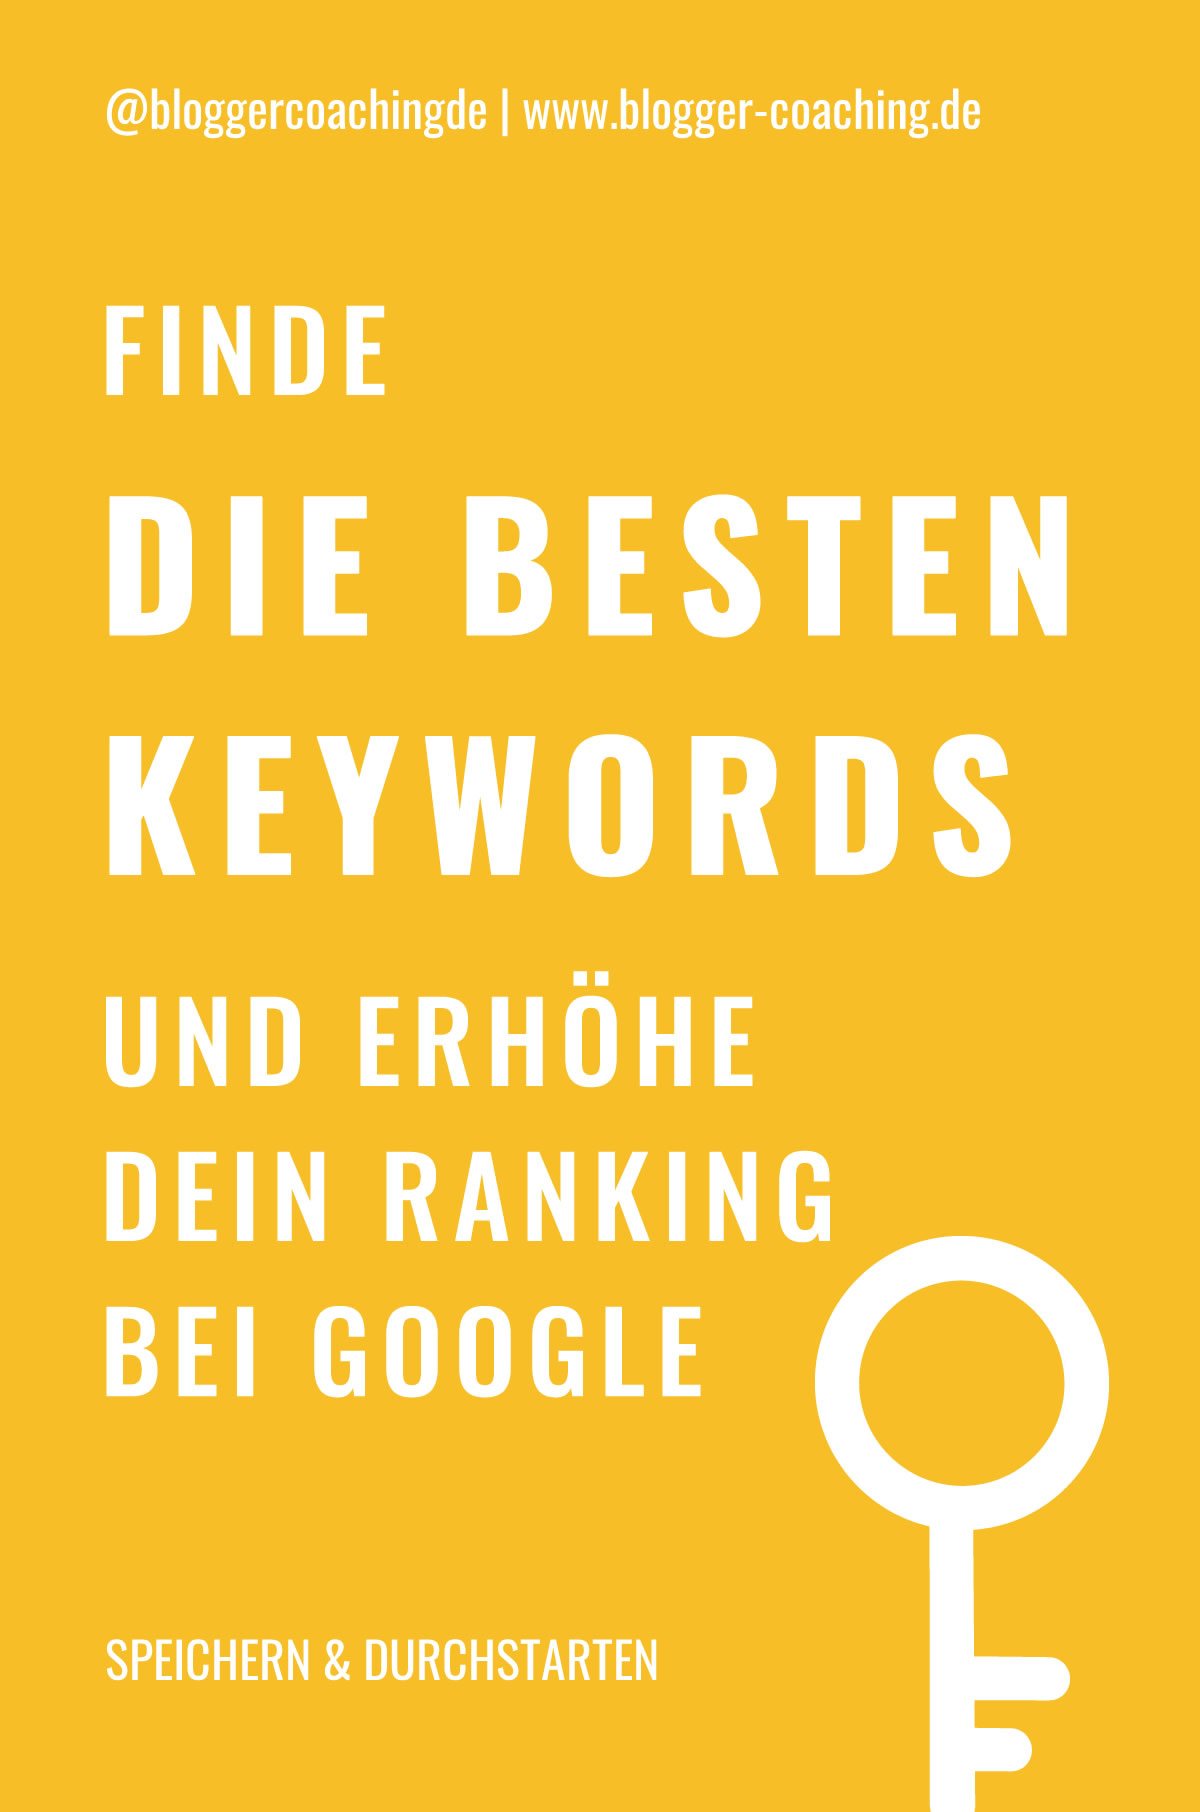 Keyword-Recherche: Die besten Keywords finden in 4 Schritten | Blogger-Coaching.de - Tipps & Kurse für Blogger